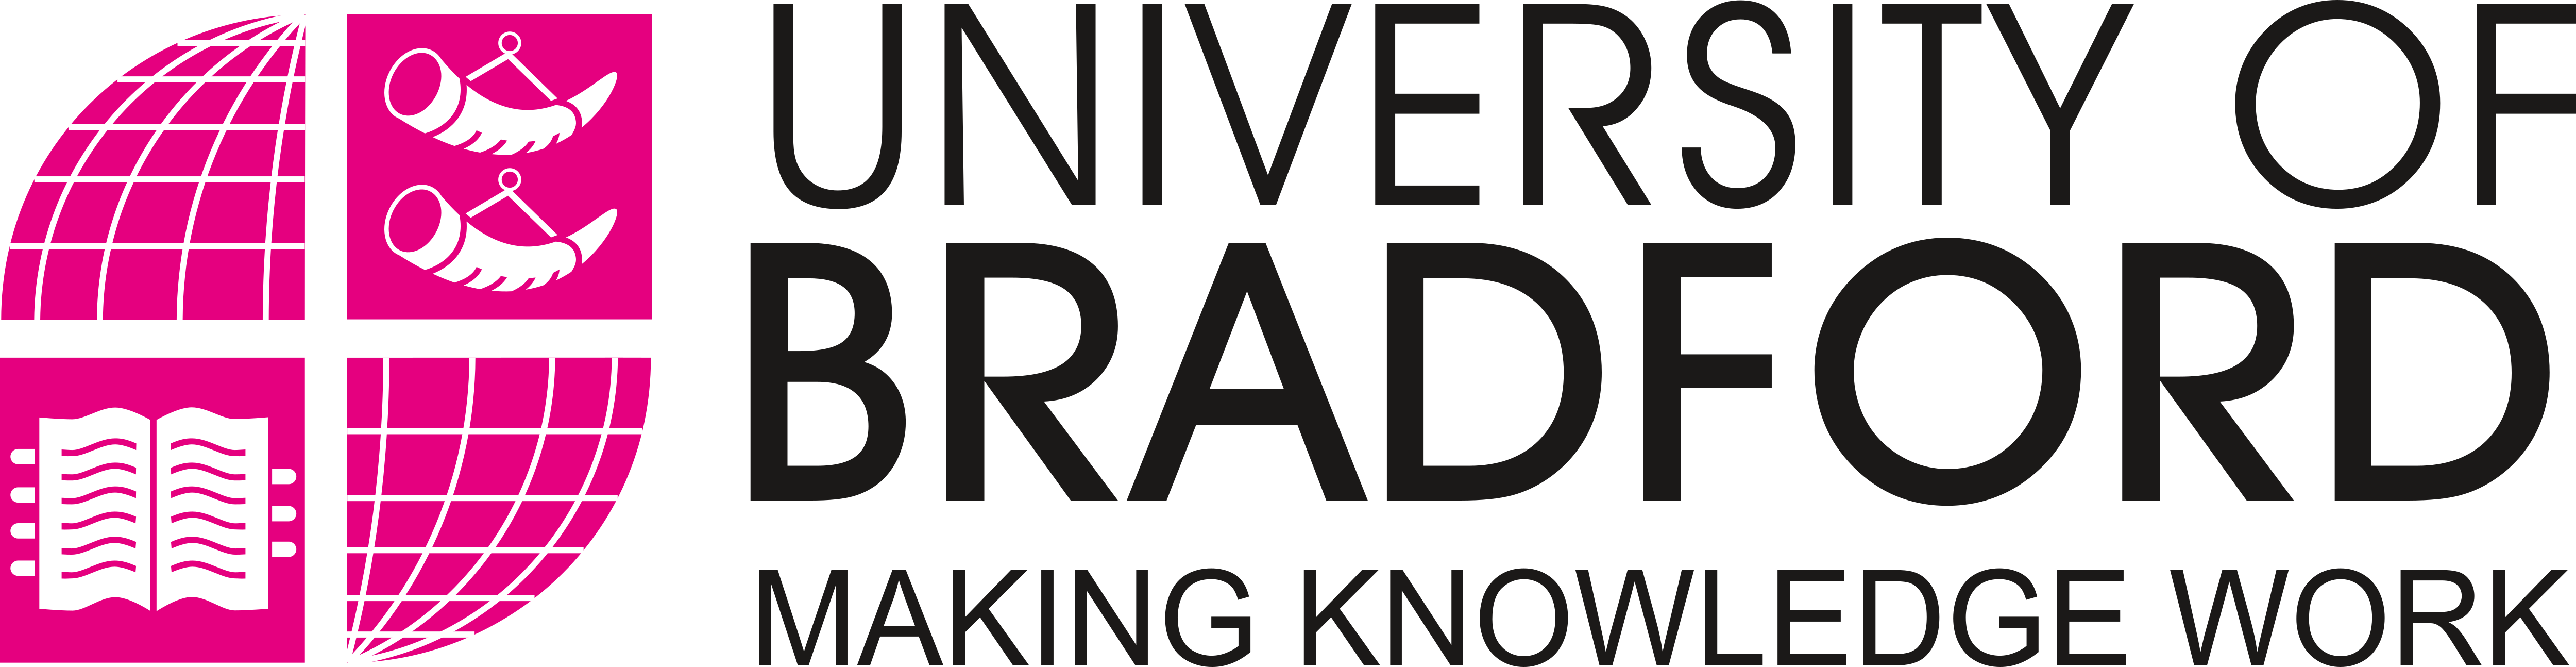 University_of_Bradford_Logo_old